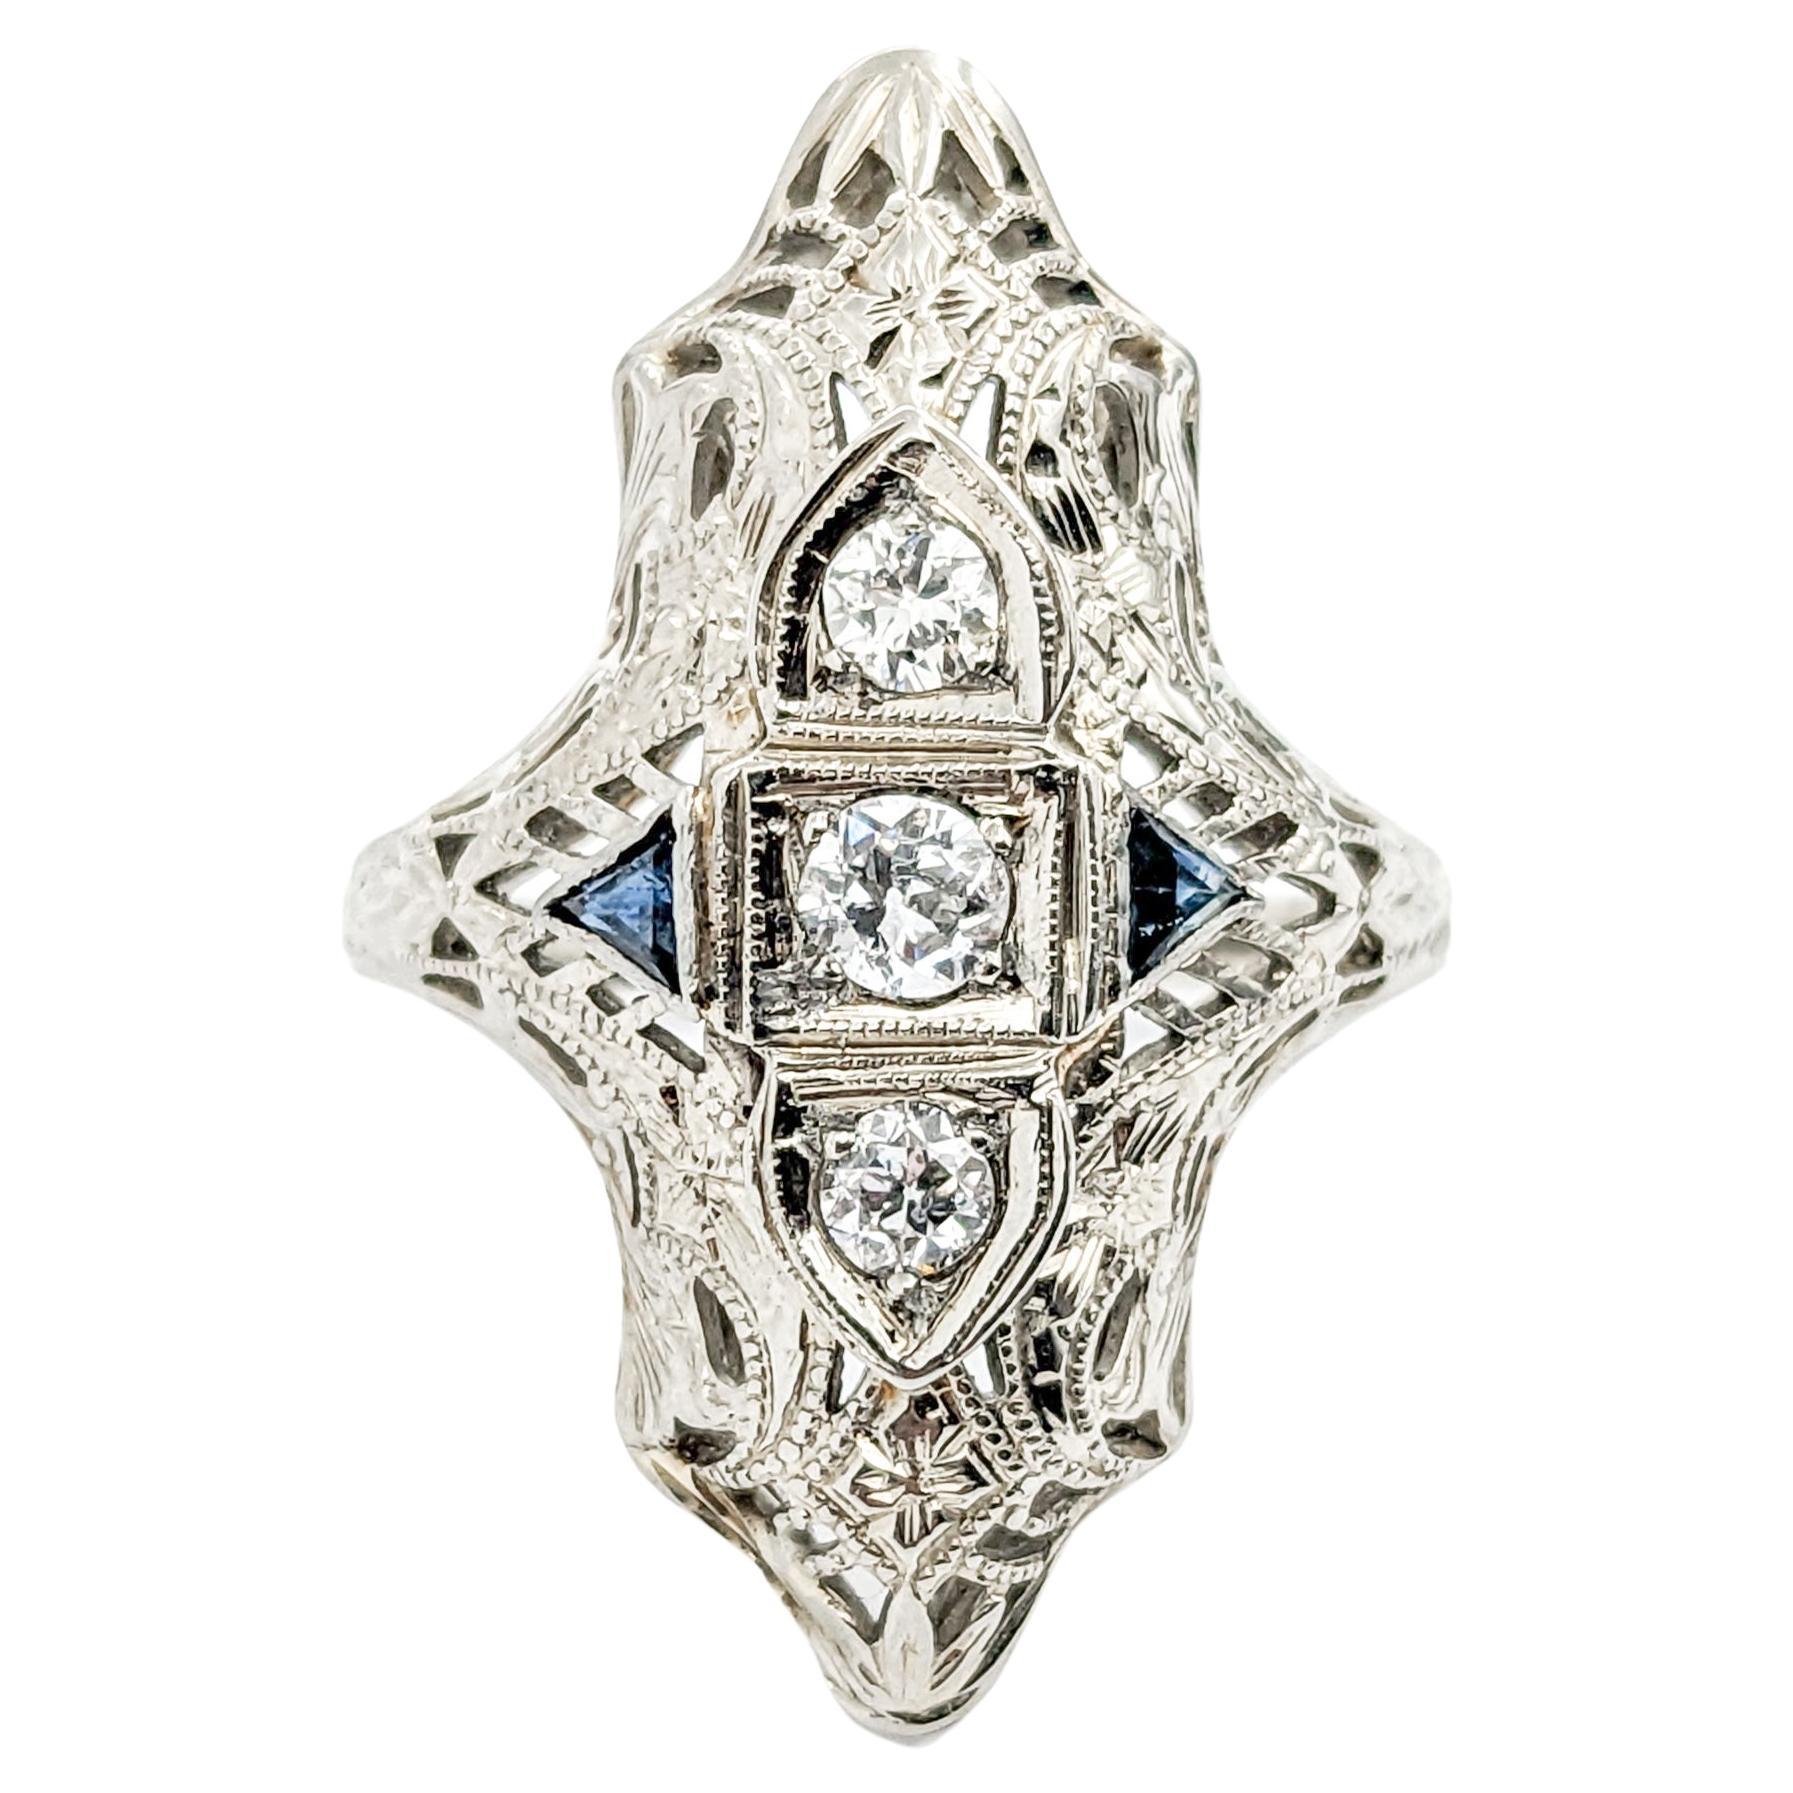 Antique Art Deco Era Diamond & Sapphire Shield Ring In White Gold